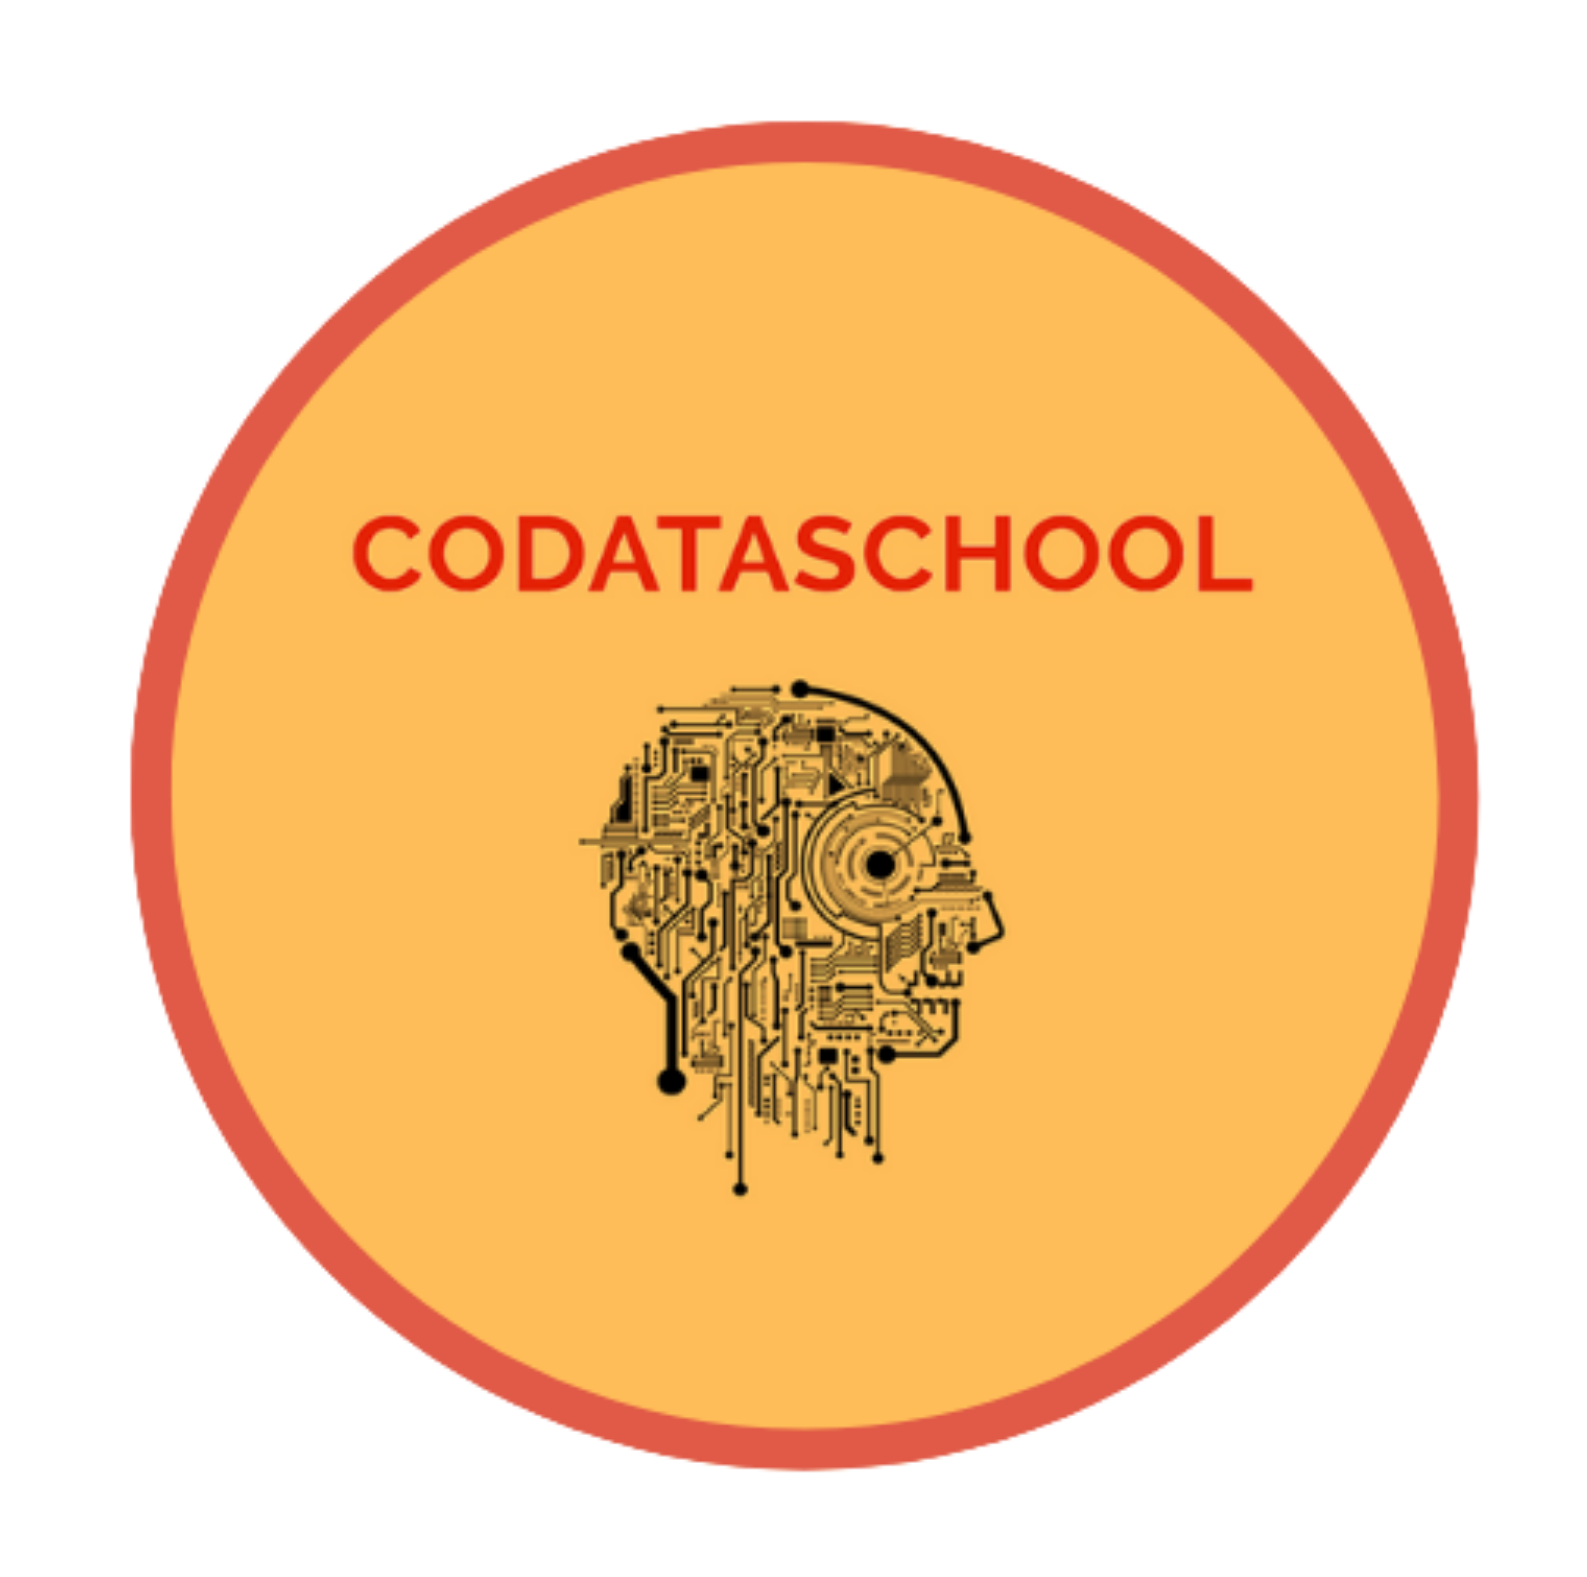 Codataschool : Replay de l’intervention de Vincent Lecerf sur le thème “Les métavers pour une société plus juste ?”